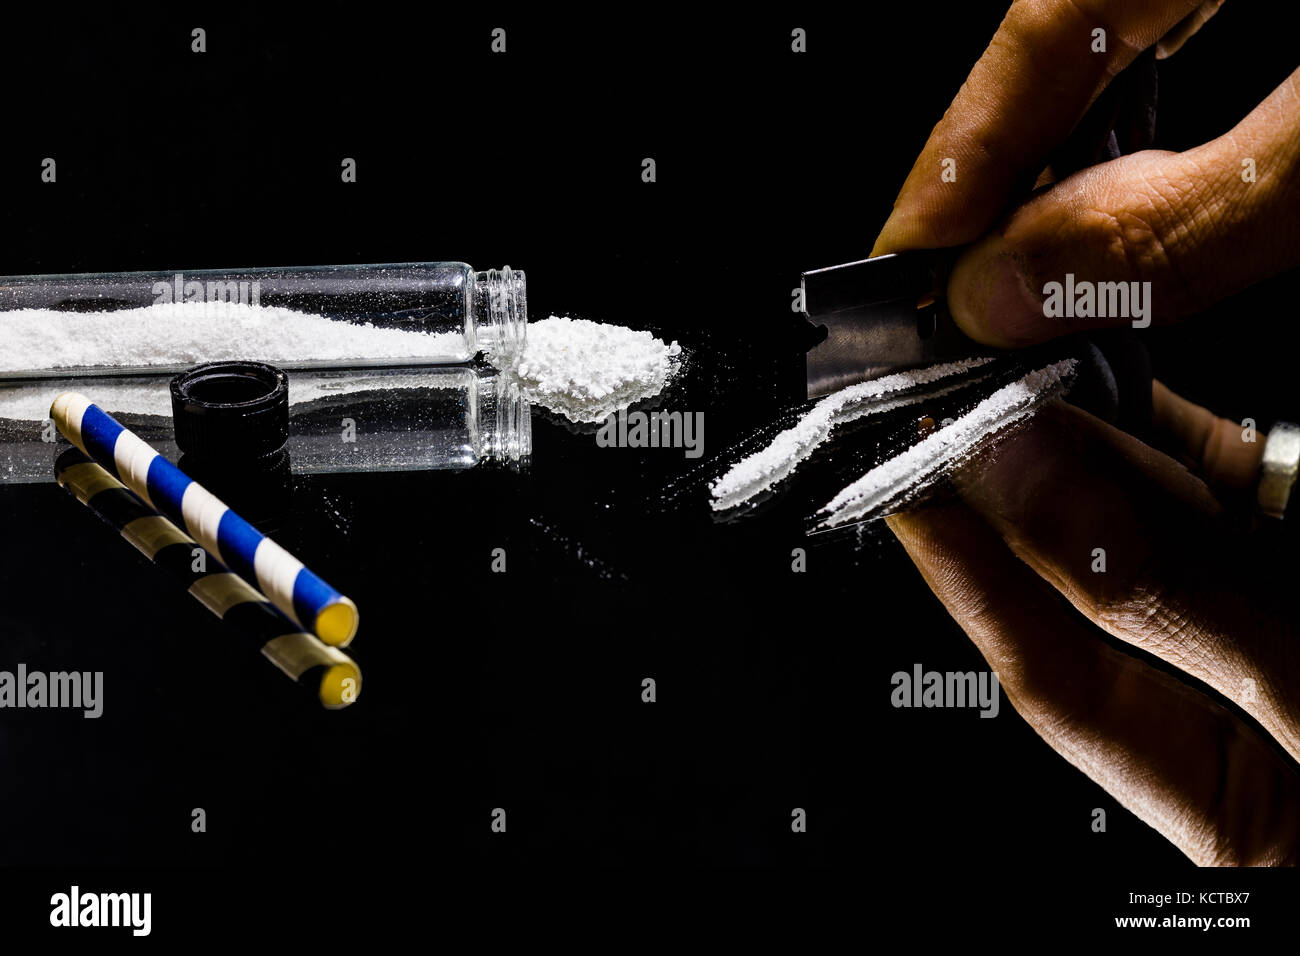 America di epidemia di droga è stato portato pesantemente alla luce in questi ultimi anni e la cocaina ranghi alta tra i farmaci utilizzati da molti gruppi socioeconomici. Foto Stock